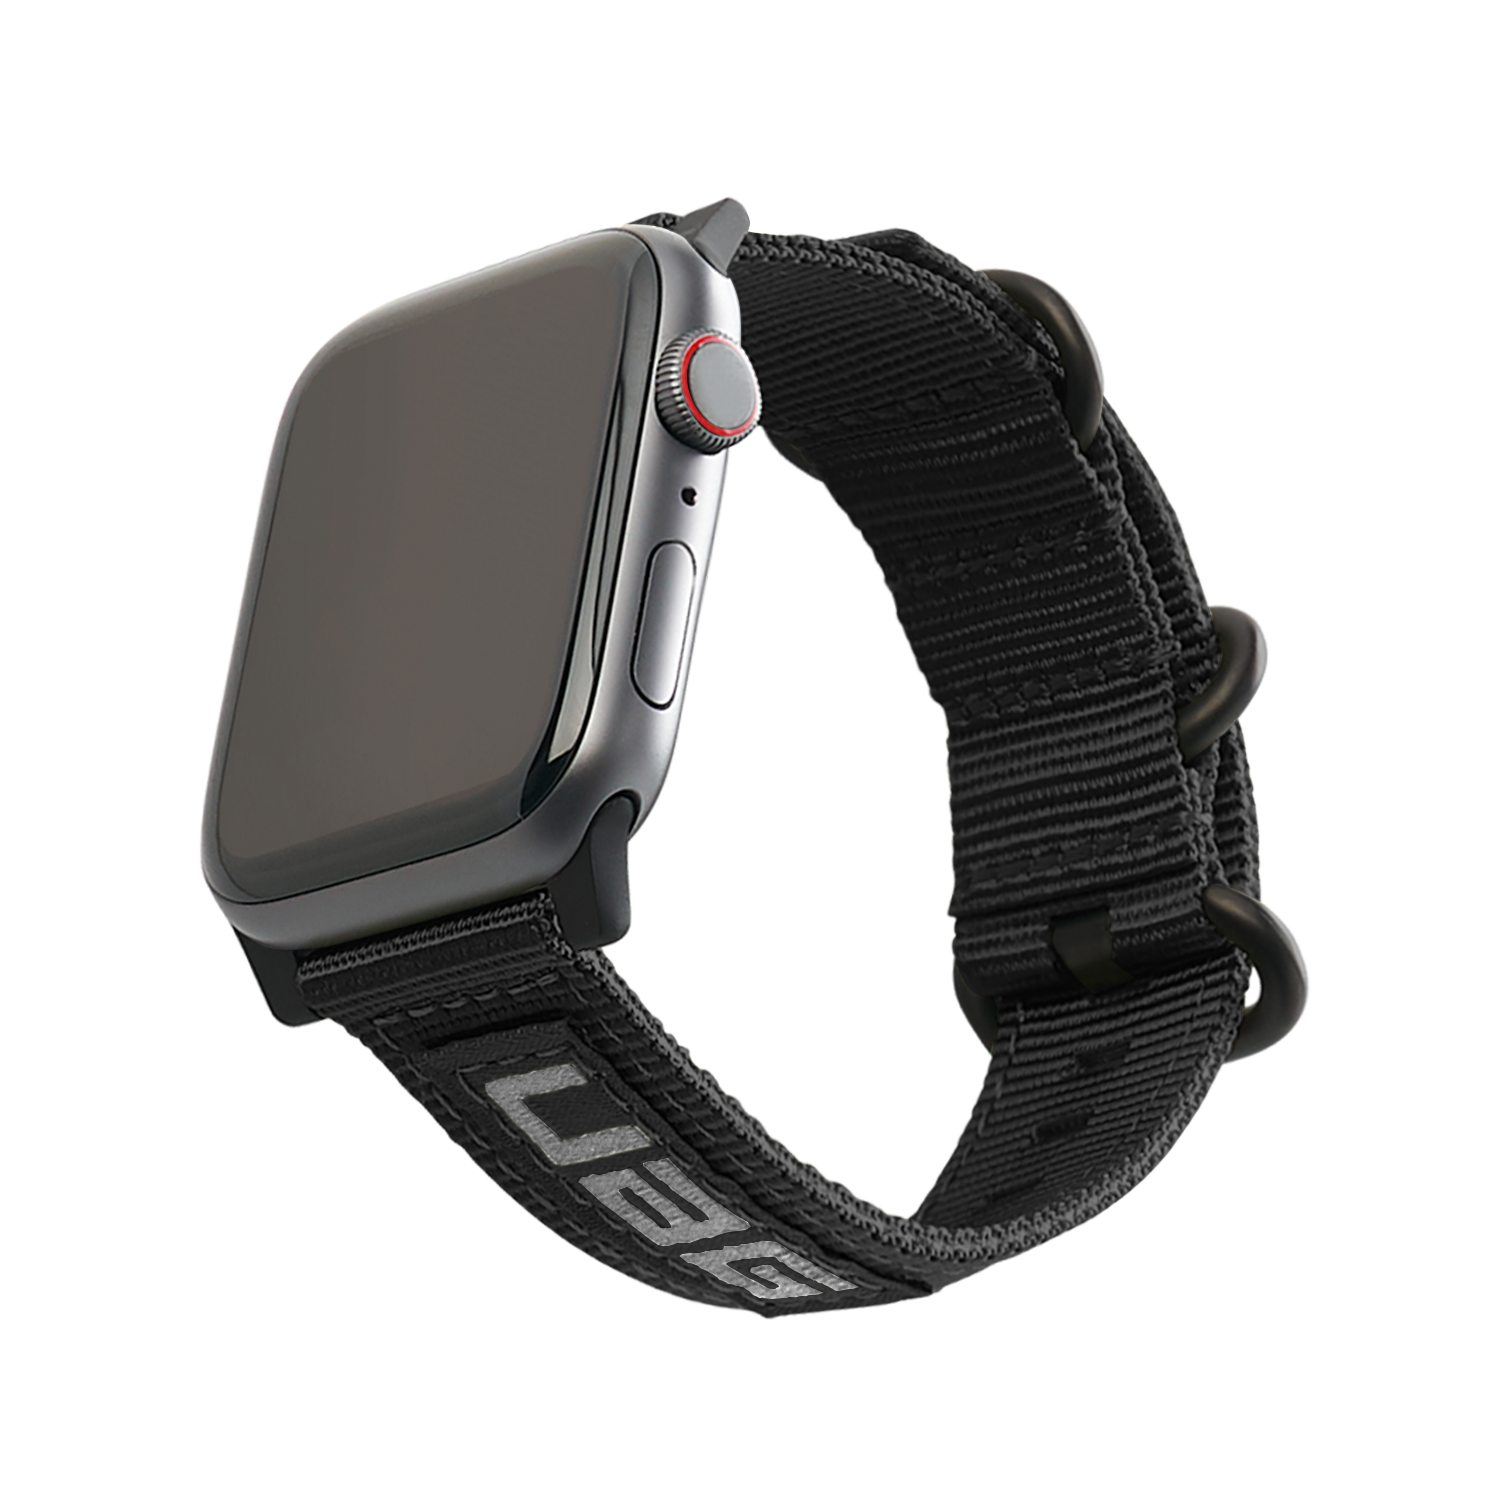 Nato Eco Strap Apple Watch 41mm Series 7 Zwart